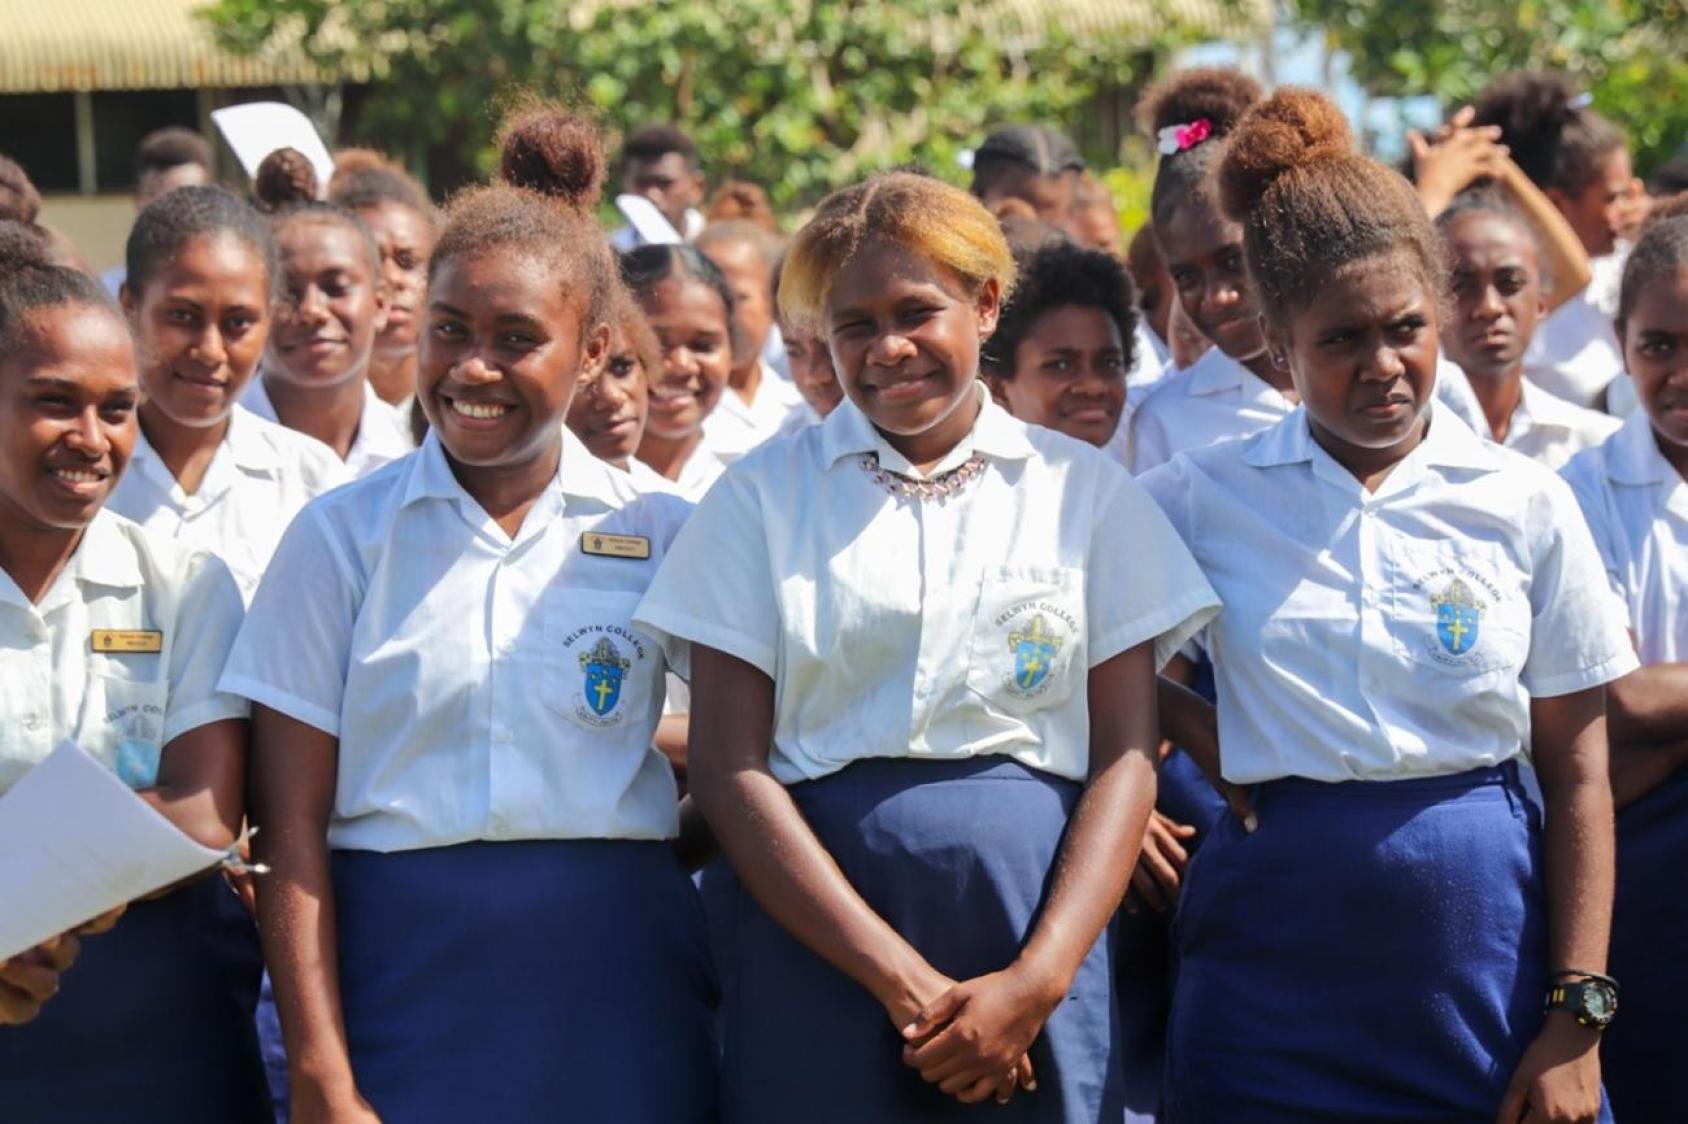 Las adolescentes con uniformes escolares -faldas azules y camisas blancas- se cruzan de brazos y sonríen.